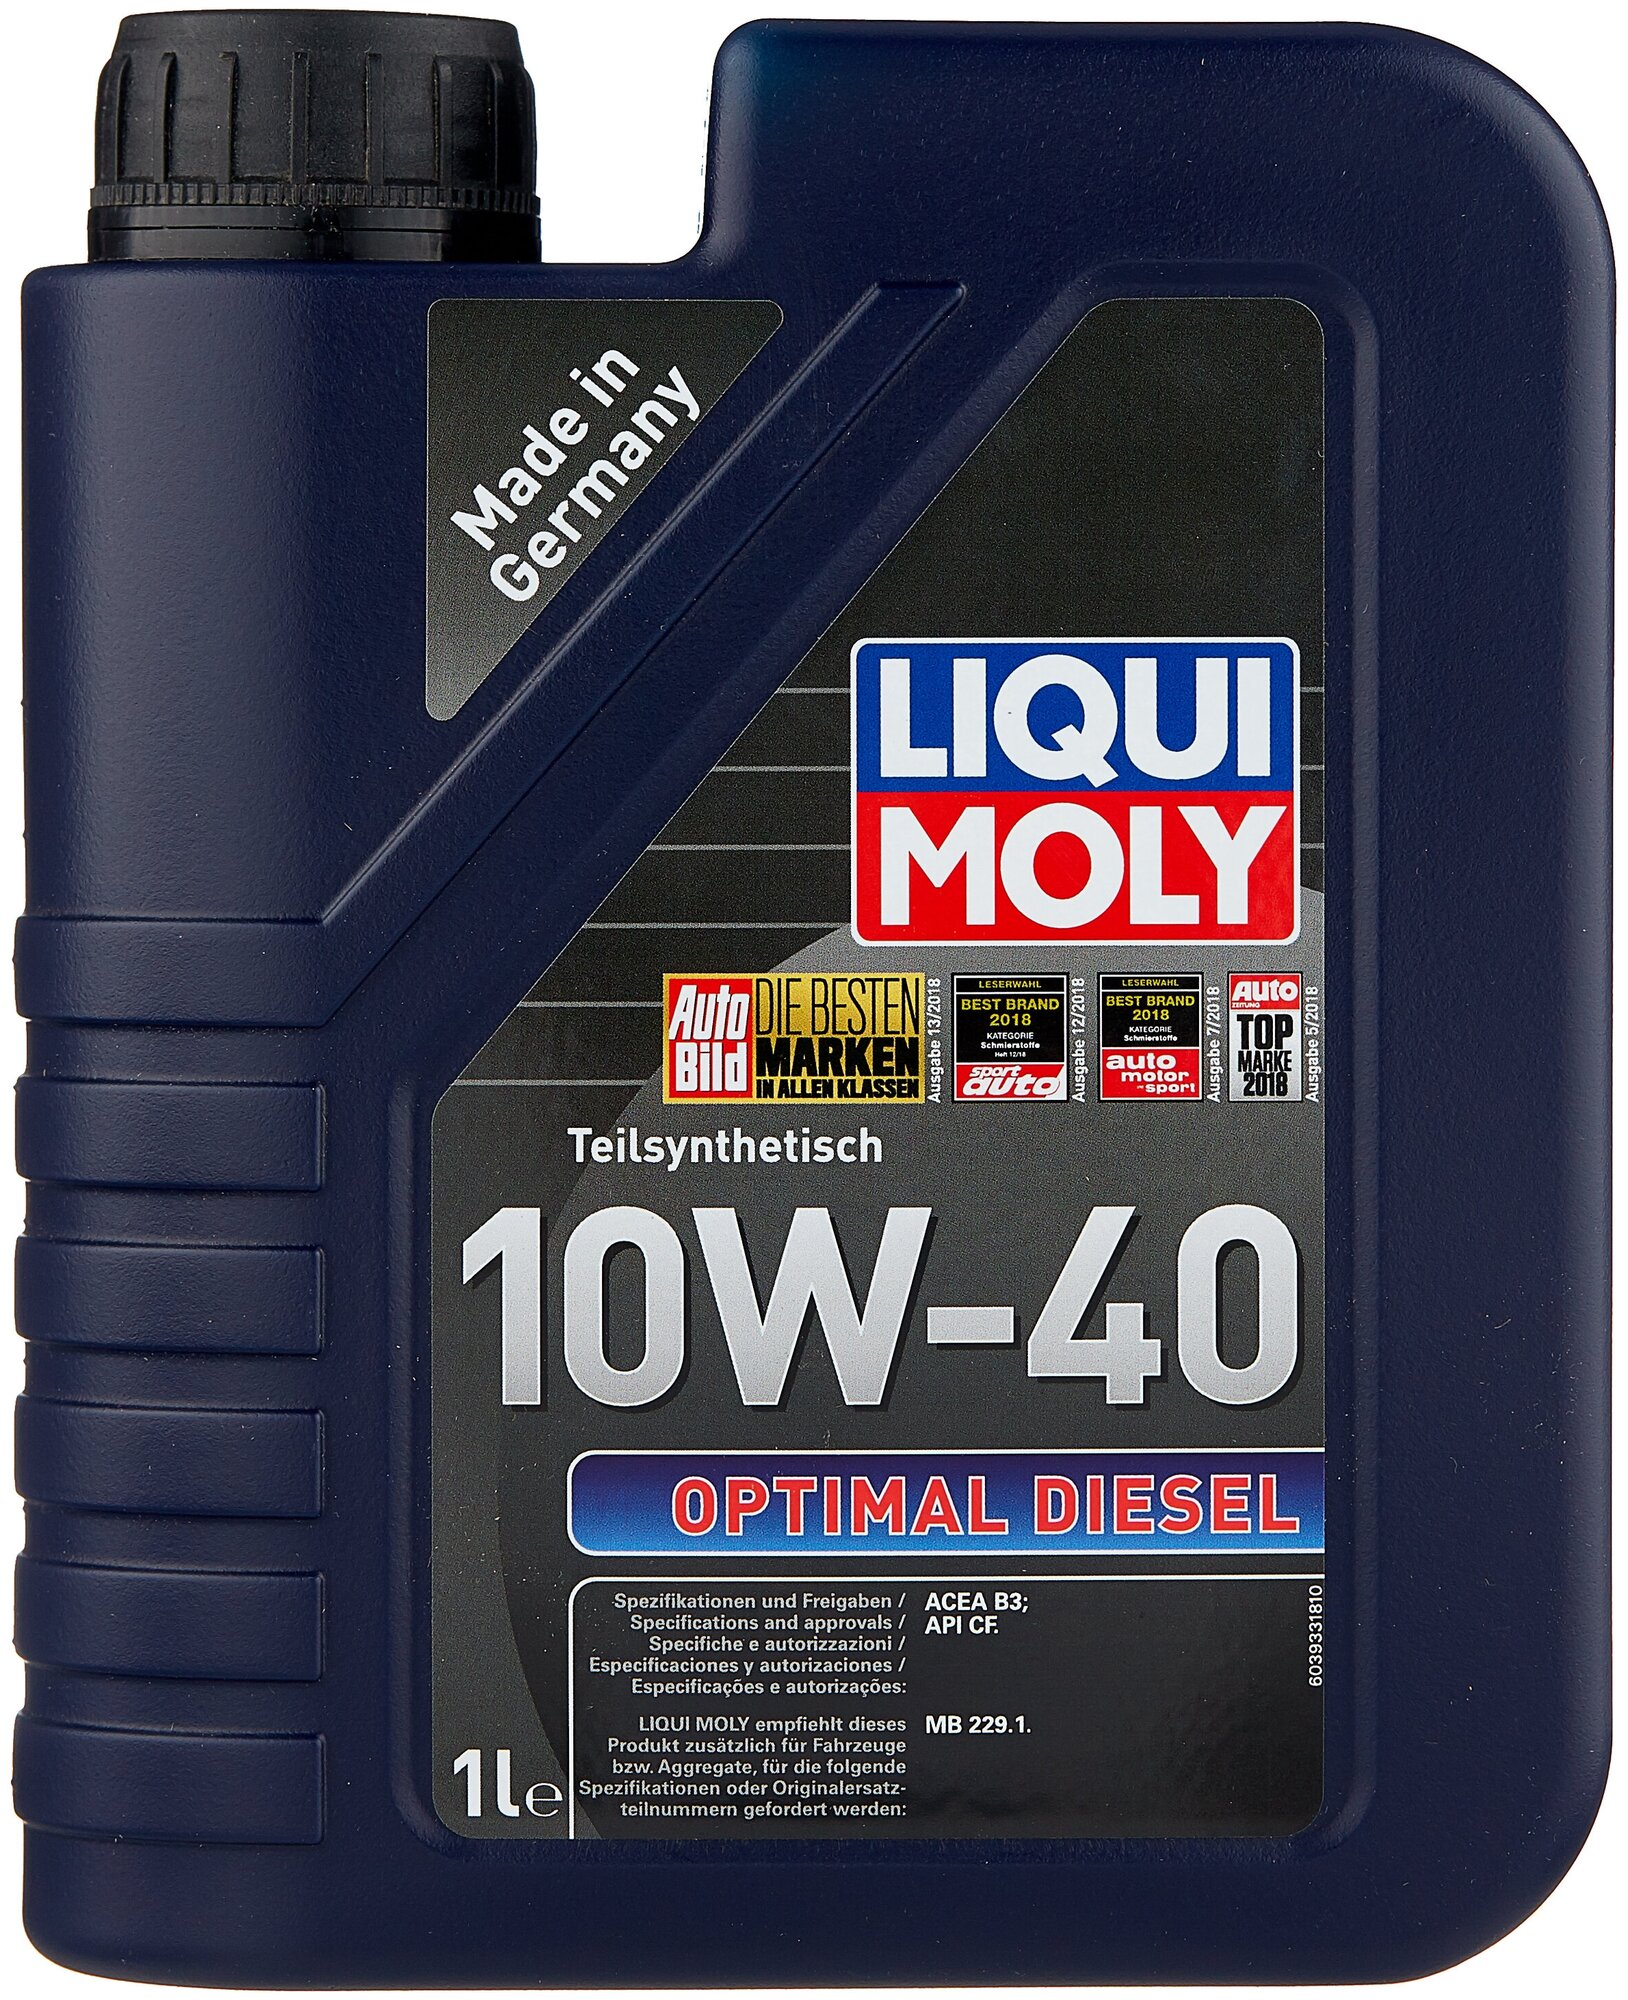 Масло моторное 10w40 liqui moly 1л полусинтетика optimal diesel, liqui moly, 3933